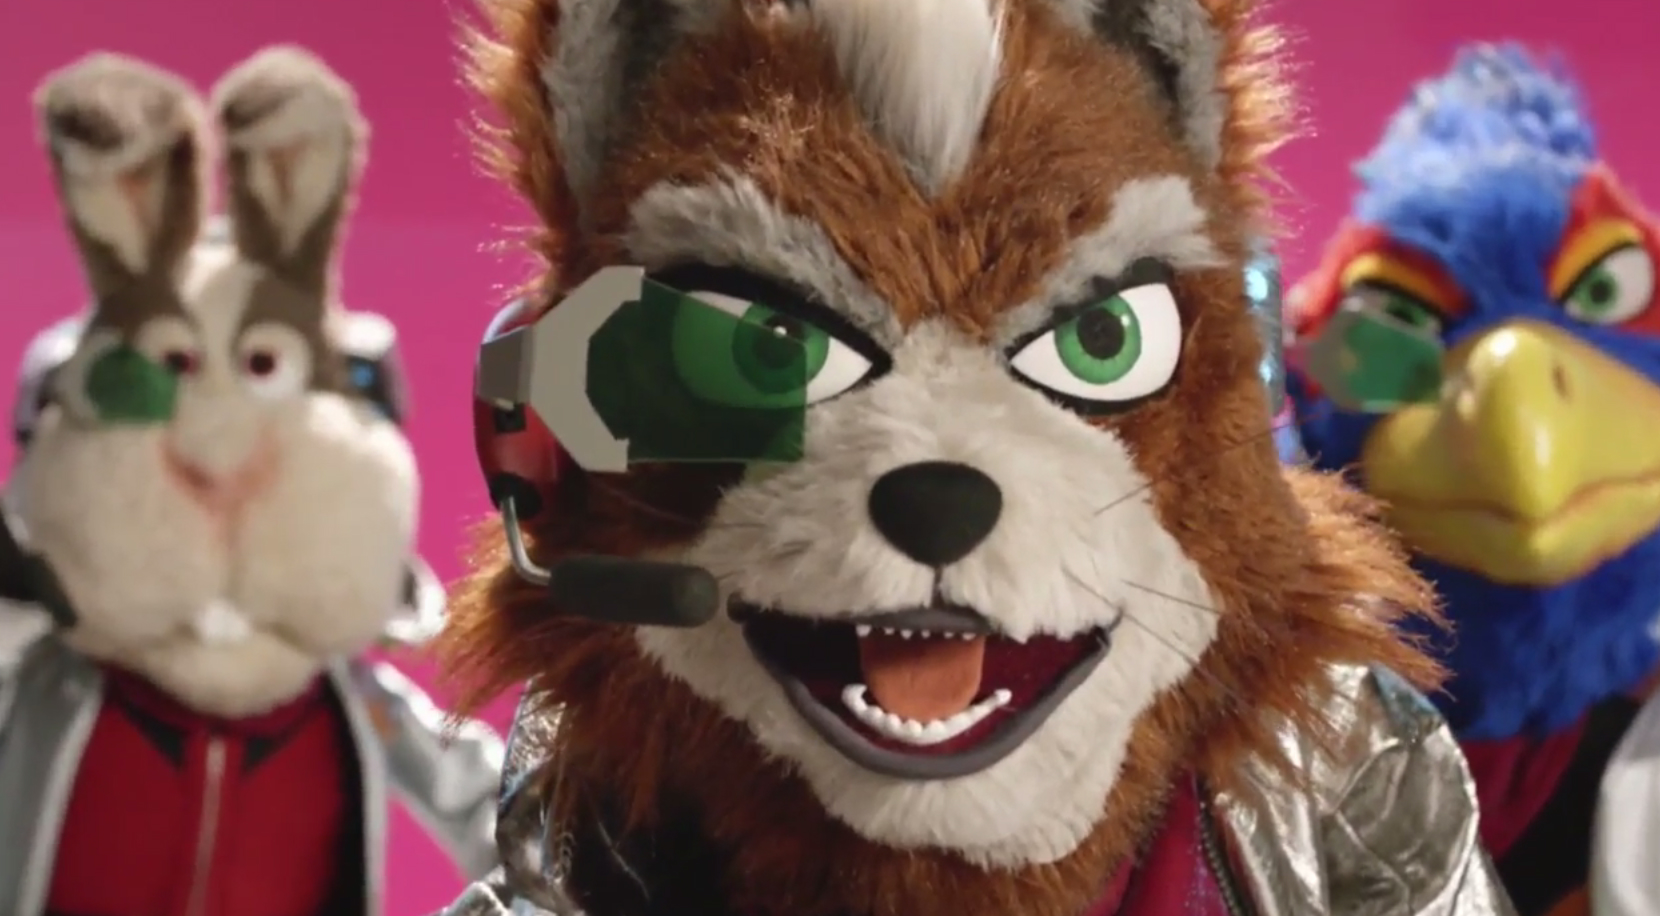 Star Fox Zero Is an Underrated Wii U Adventure